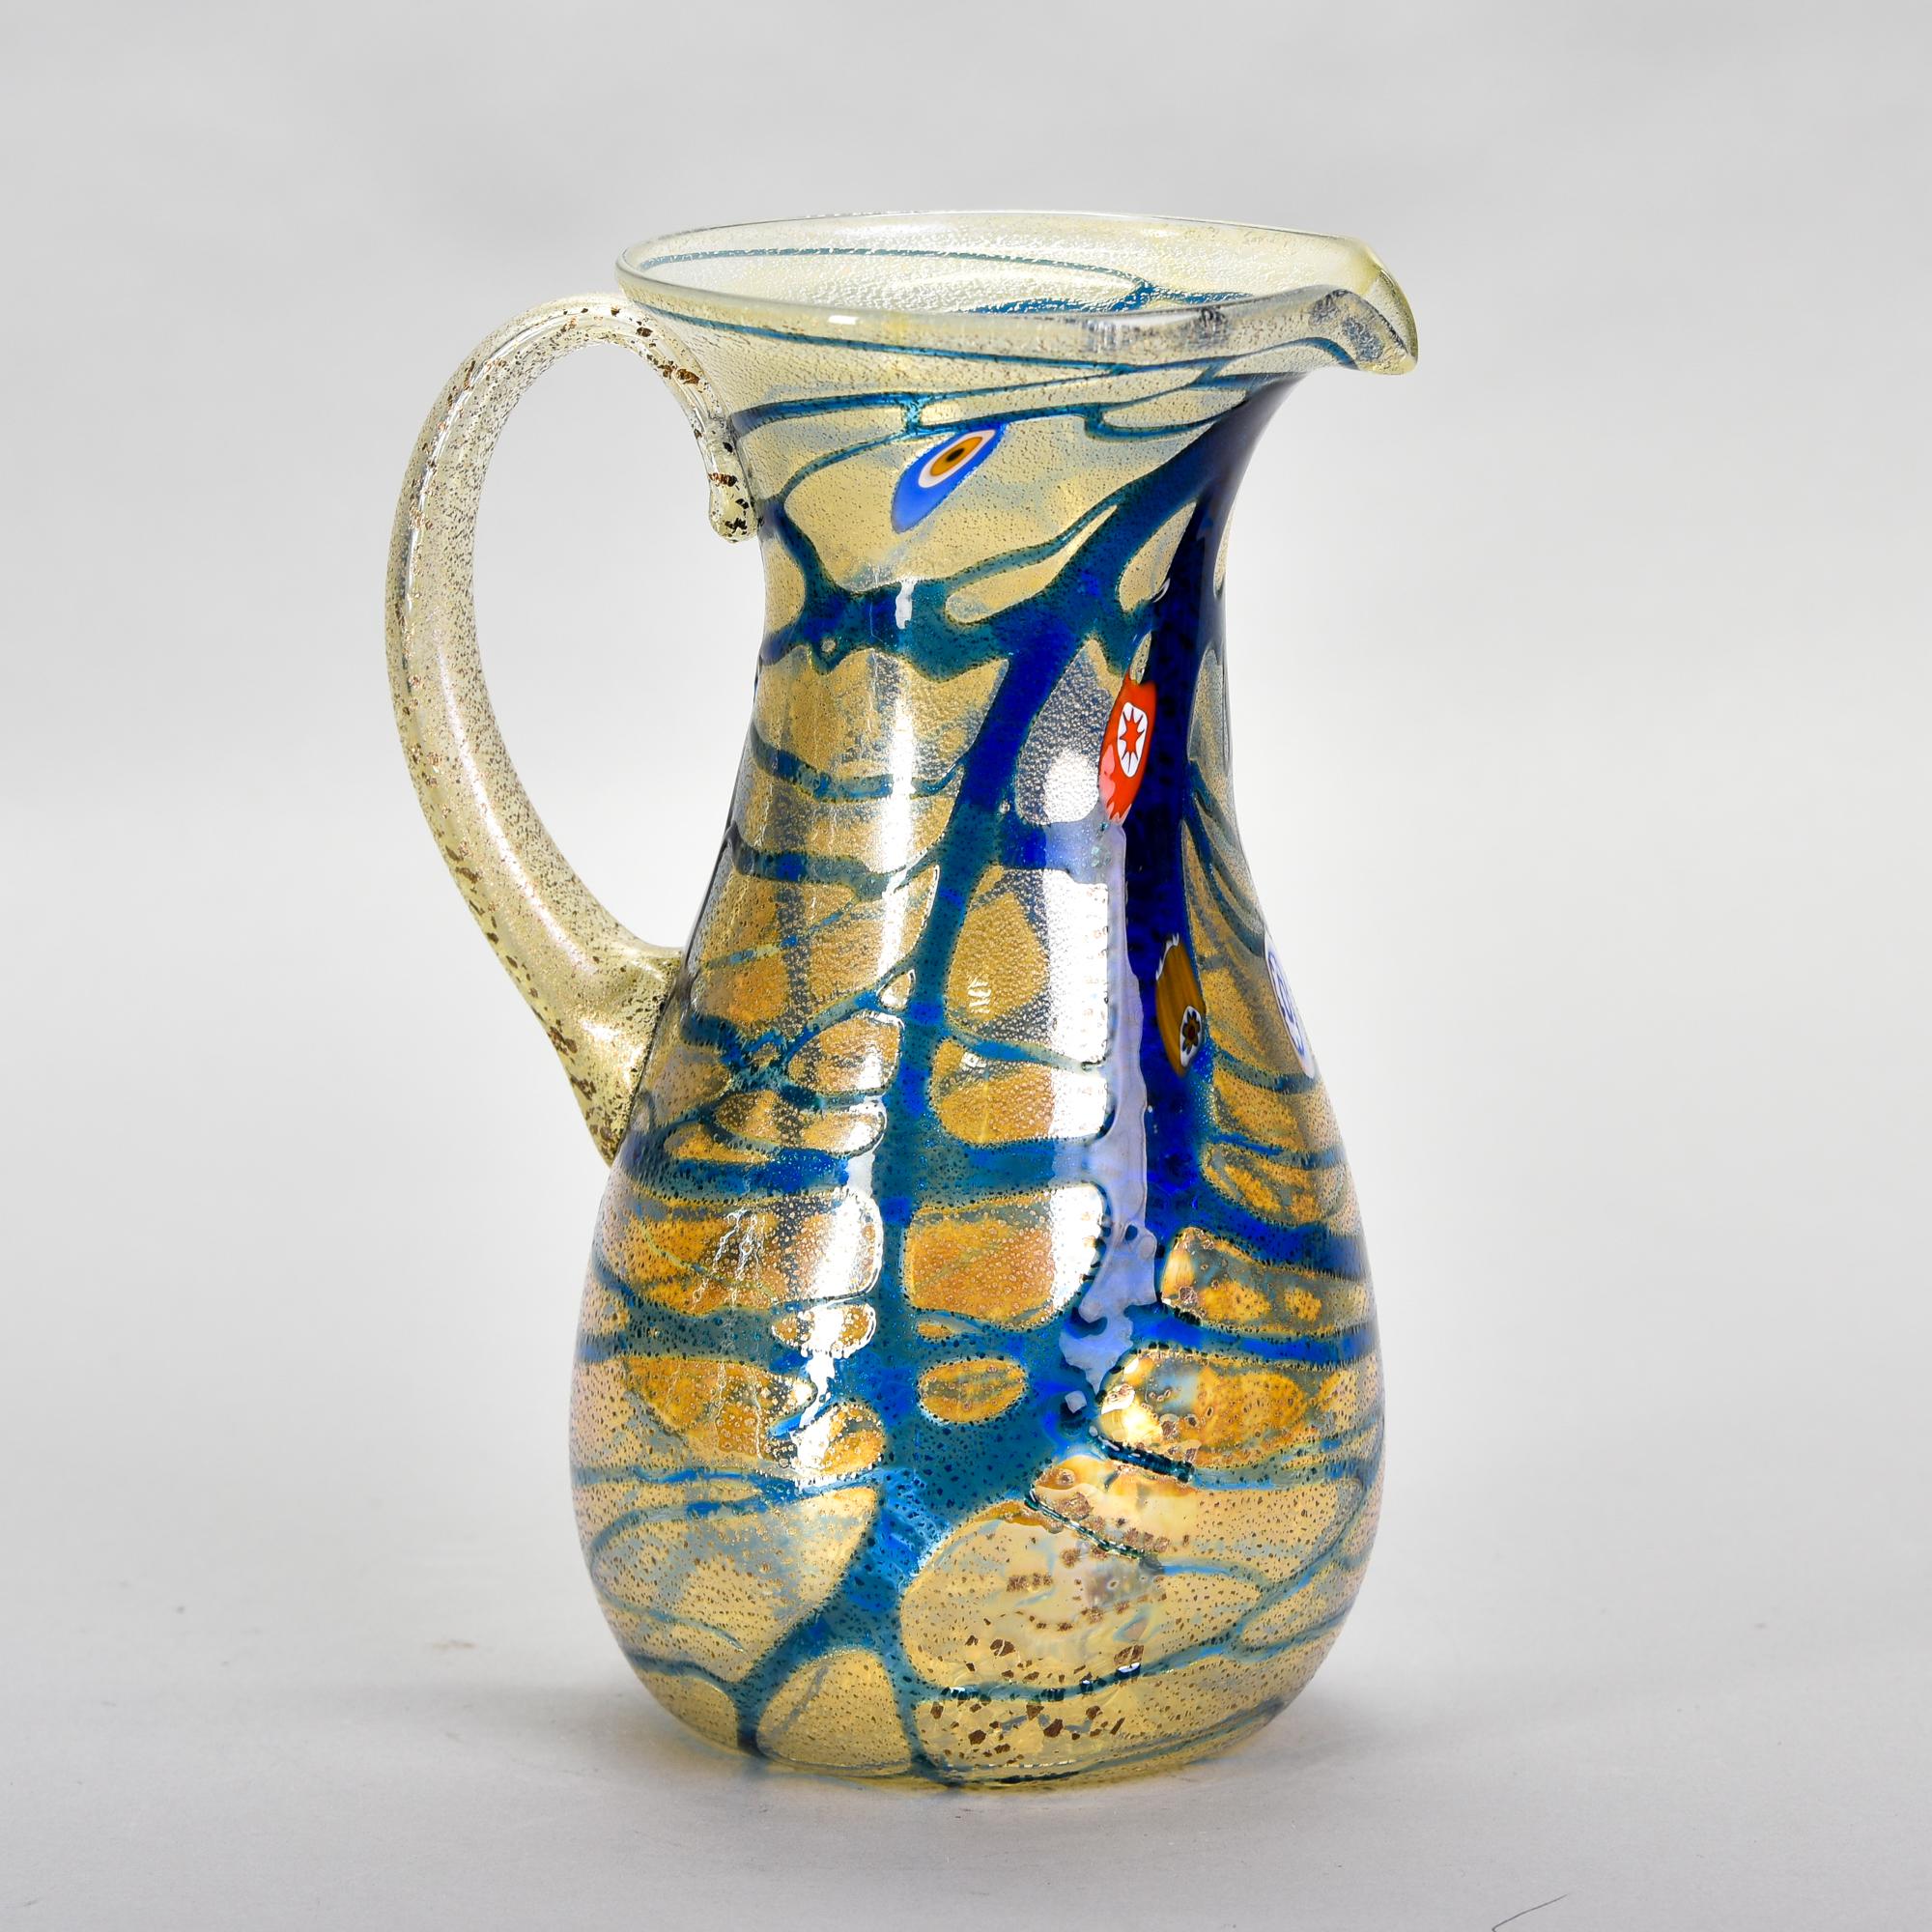 Dieser neue Krug aus Murano-Glas, der in Italien gefunden wurde, hat einen schillernden, blassgoldenen Körper mit blauen Streifen und einigen verstreuten Muranoblüten. Unbekannter Hersteller. Vielseitiges, dekoratives Gefäß, das sowohl als Vase als